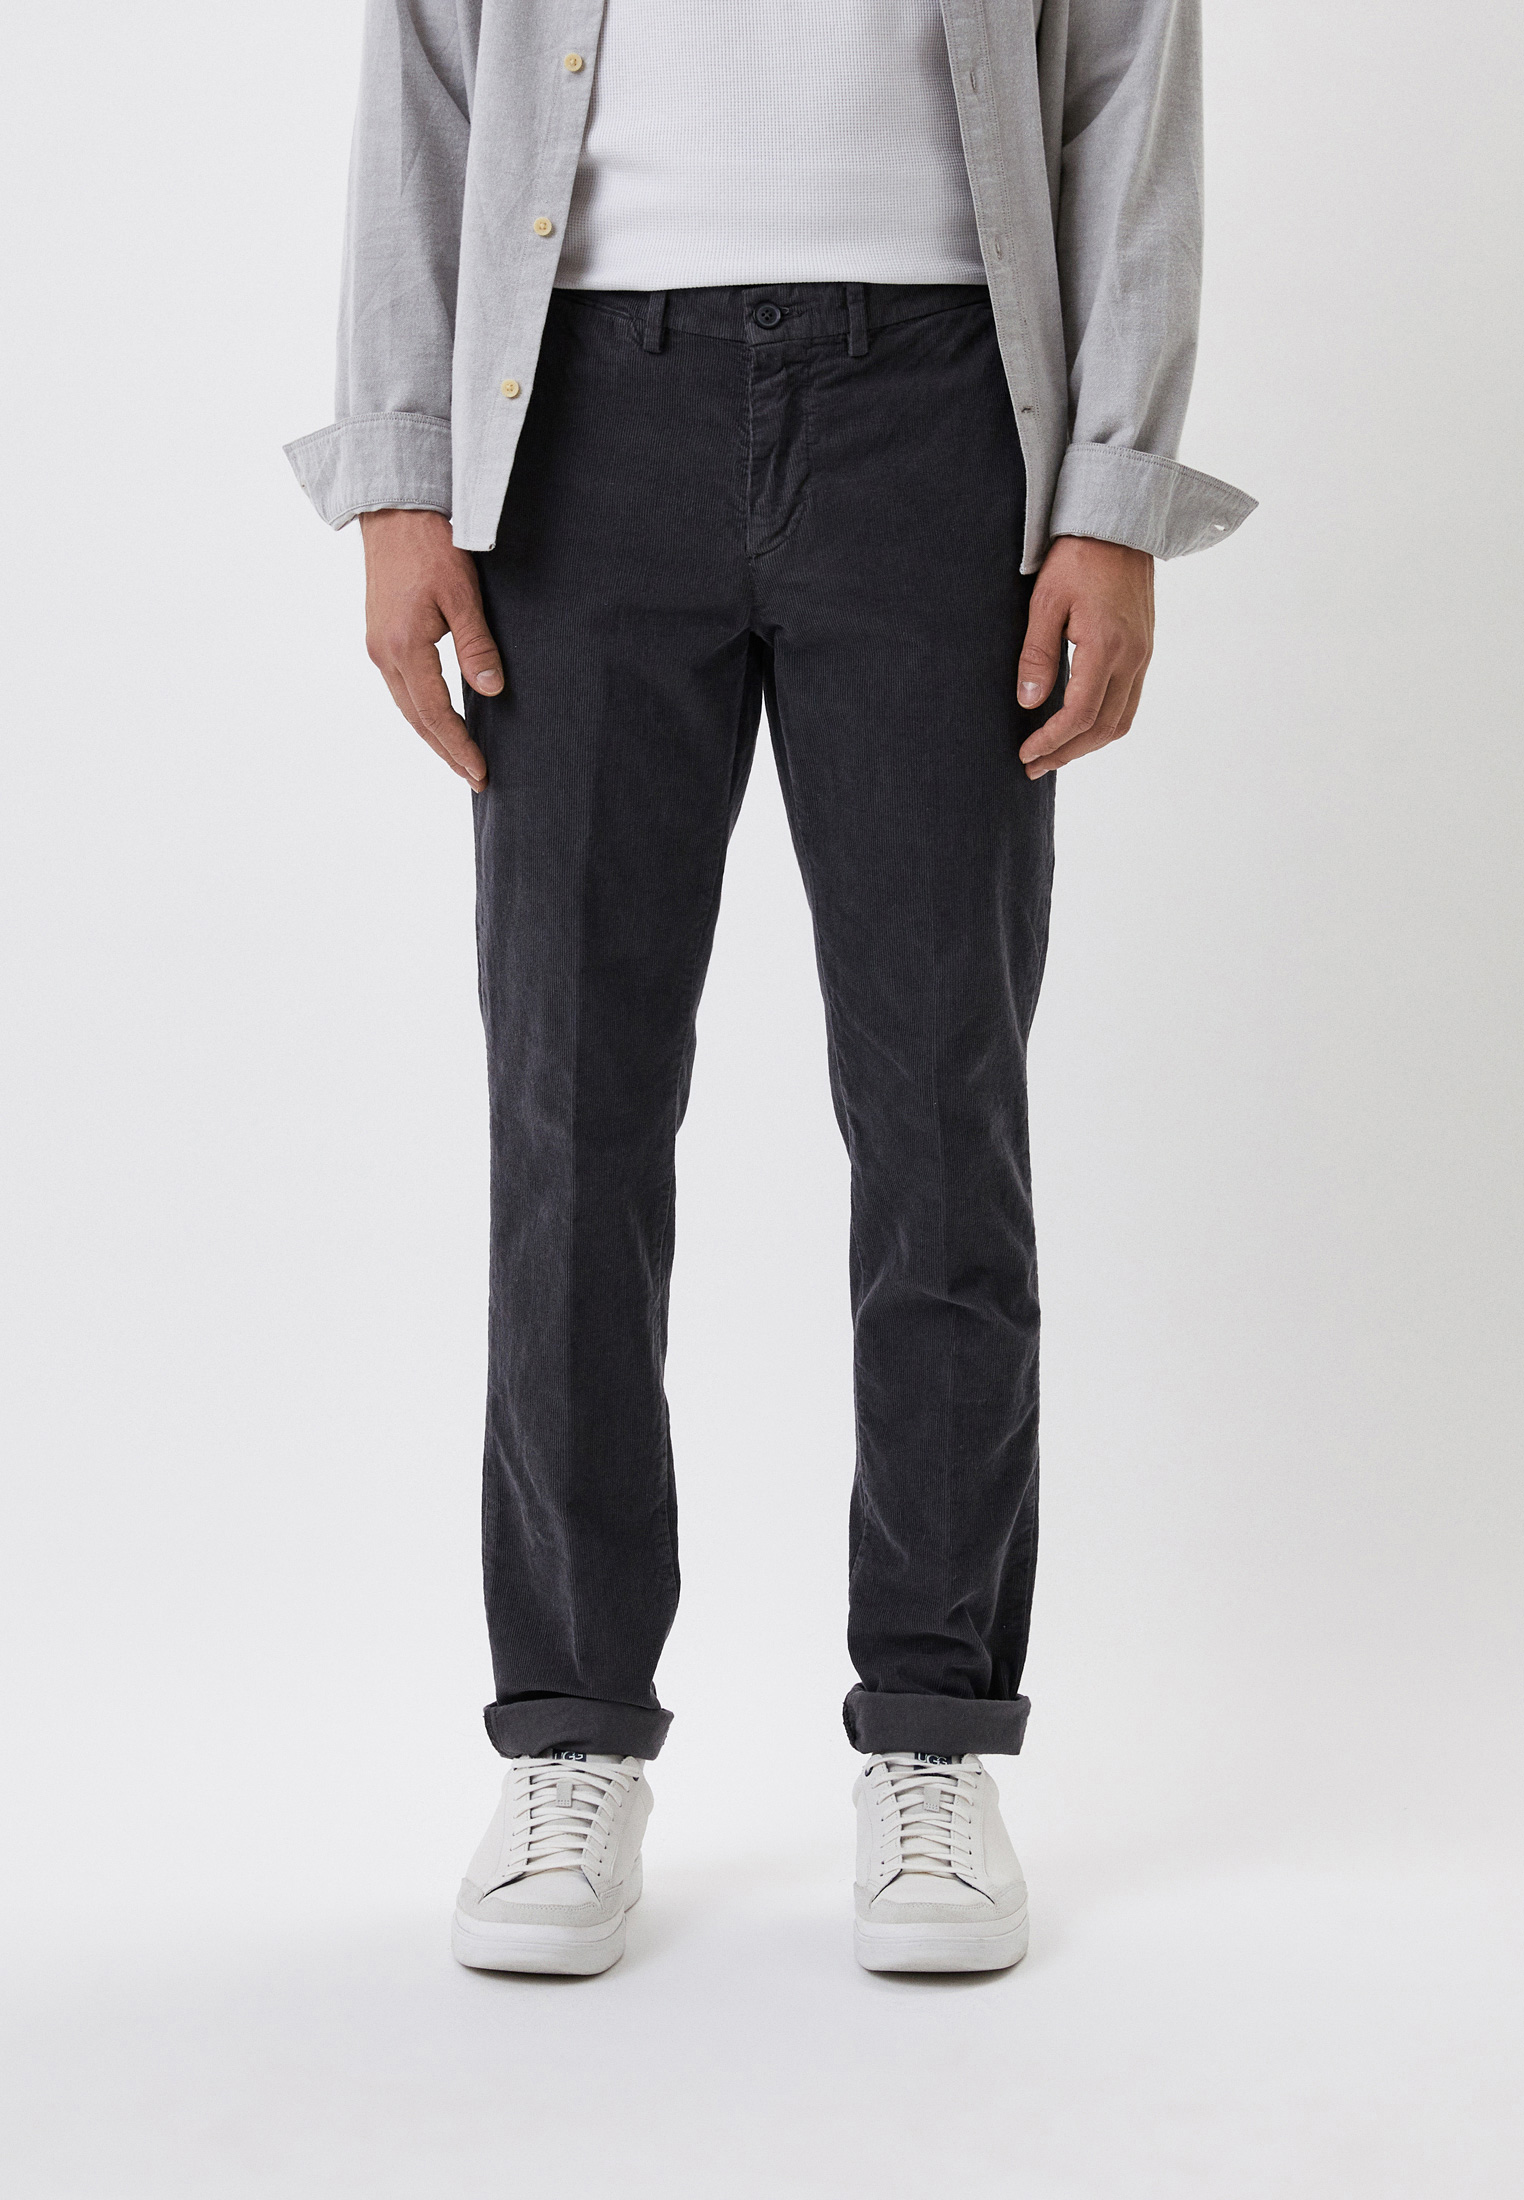 Мужские повседневные брюки Trussardi (Труссарди) 52P00000-1T005985: изображение 1